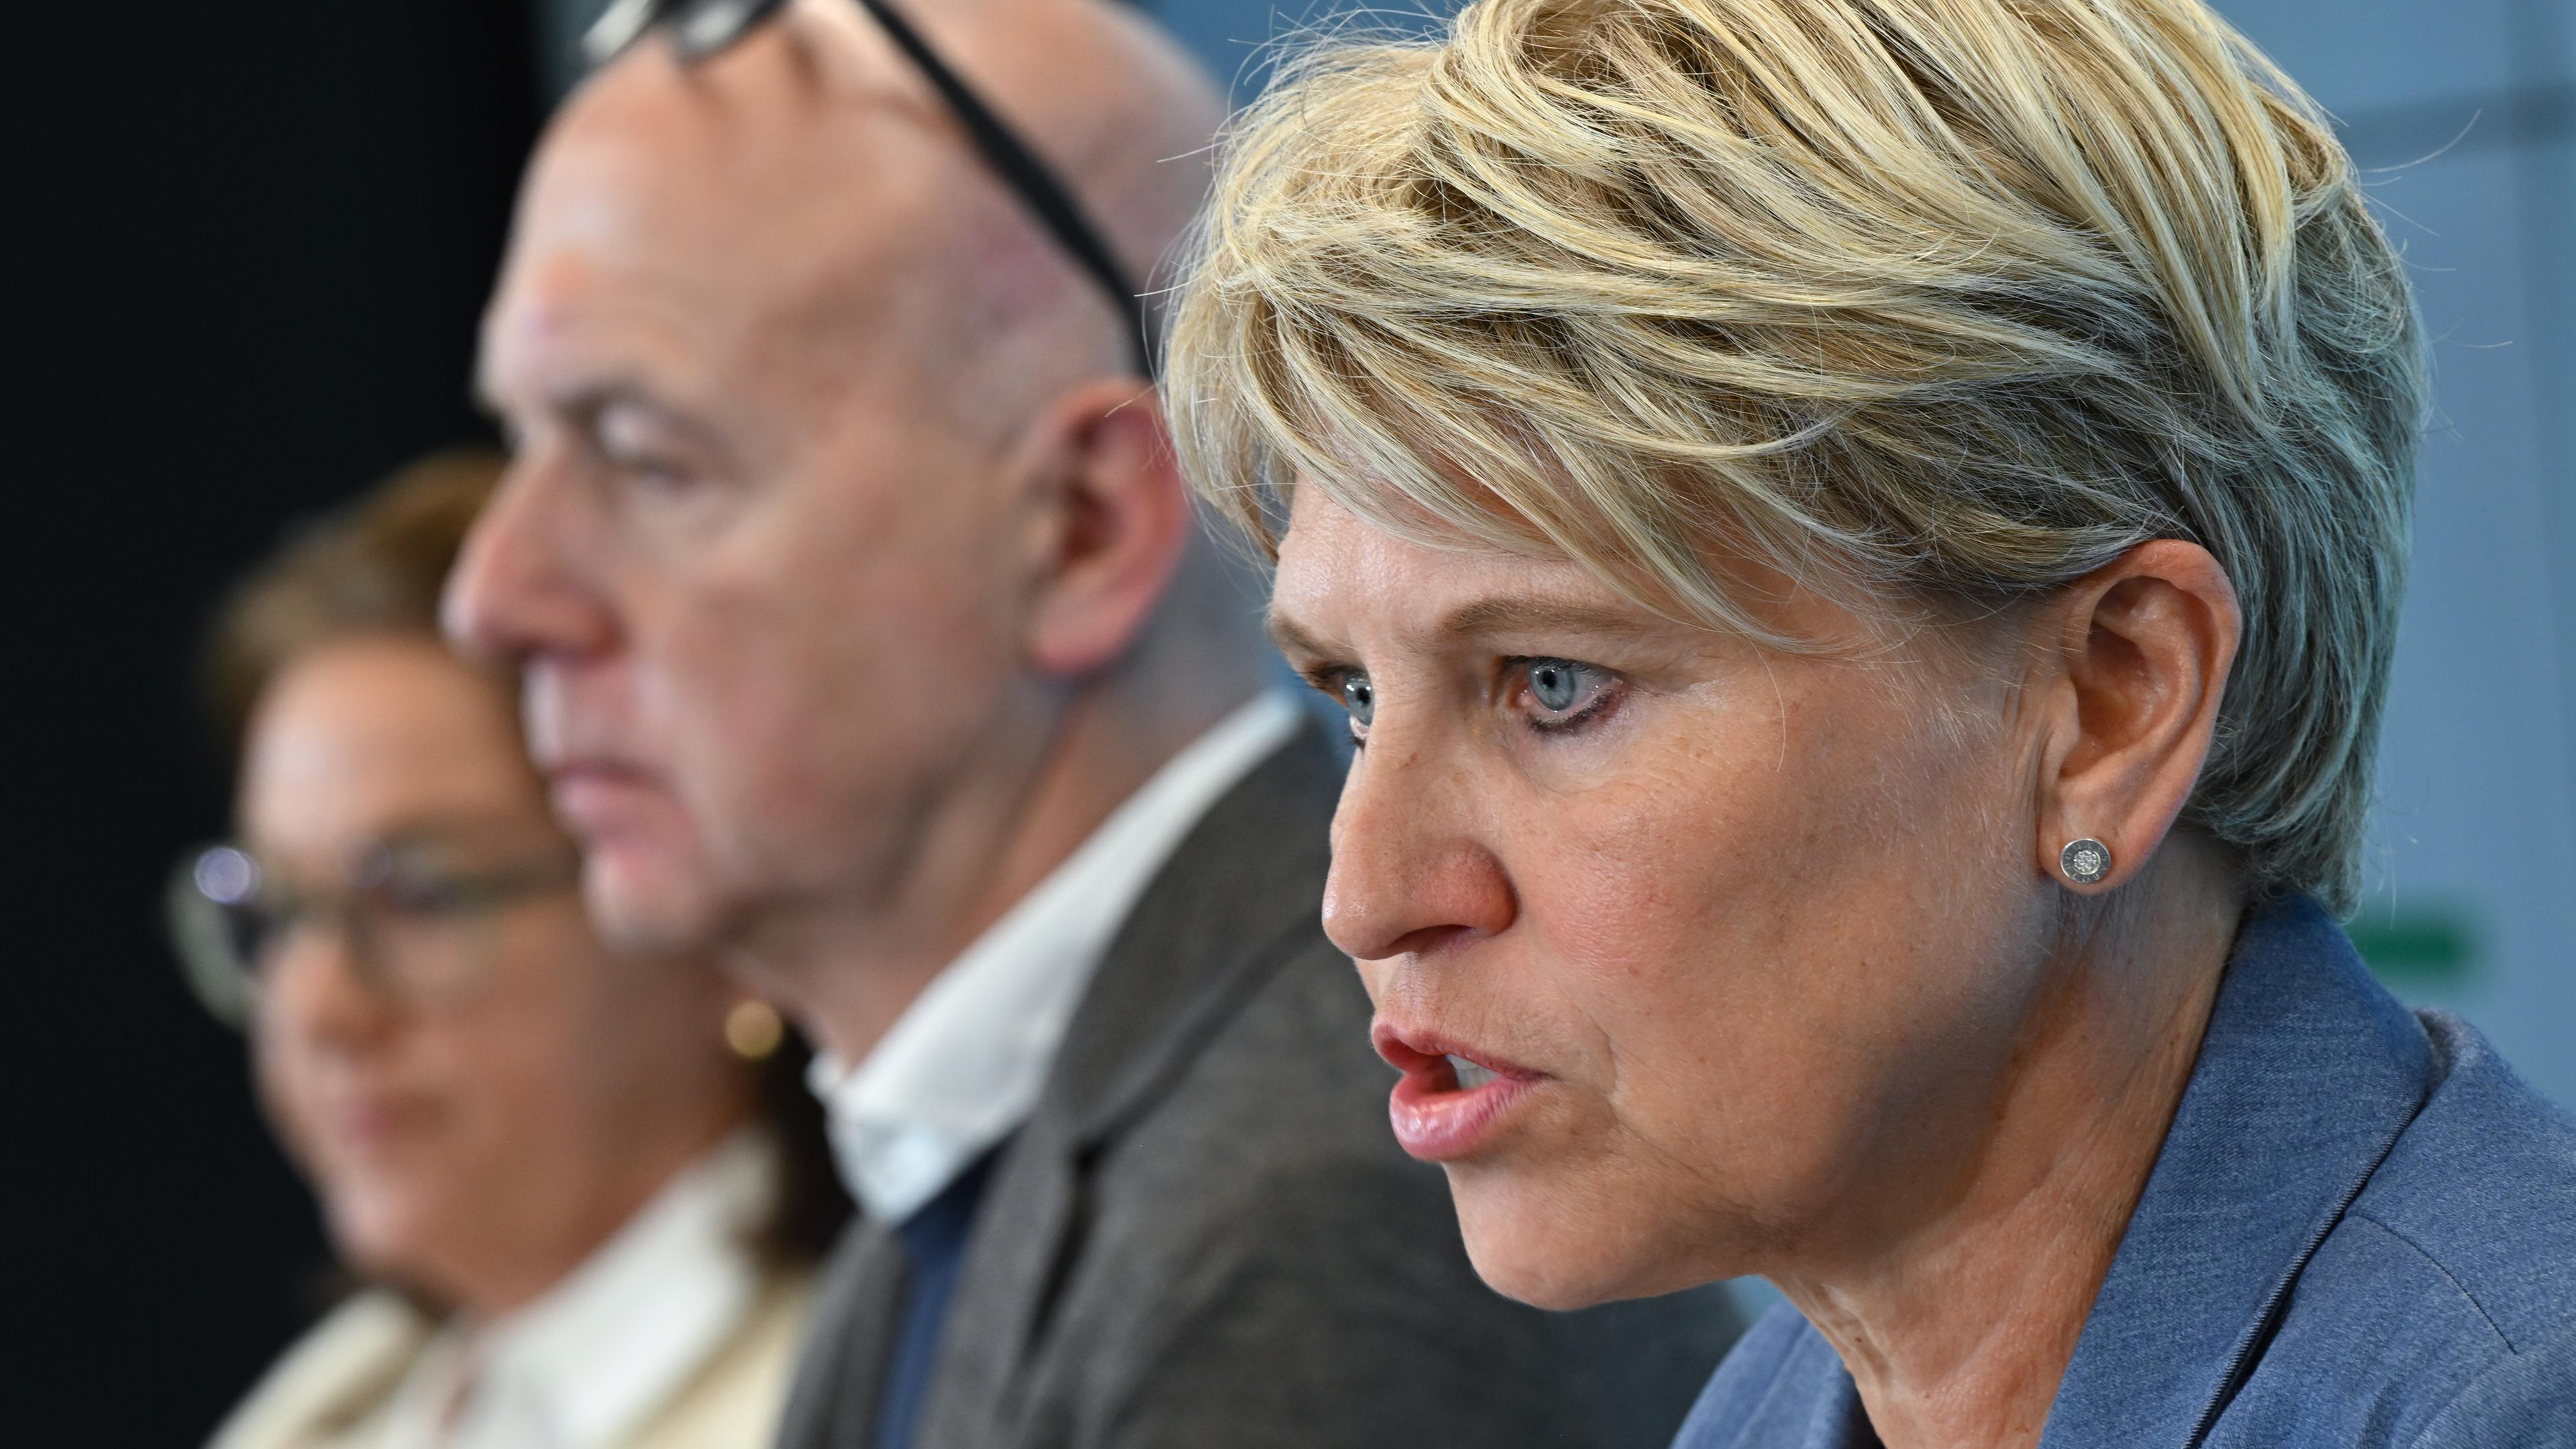 Doris Fitschen (r-l), DFB-Koordinatorin, Bernd Neuendorf, DFB-Präsident, und Heike Ullrich, DFB-Generalsekretärin